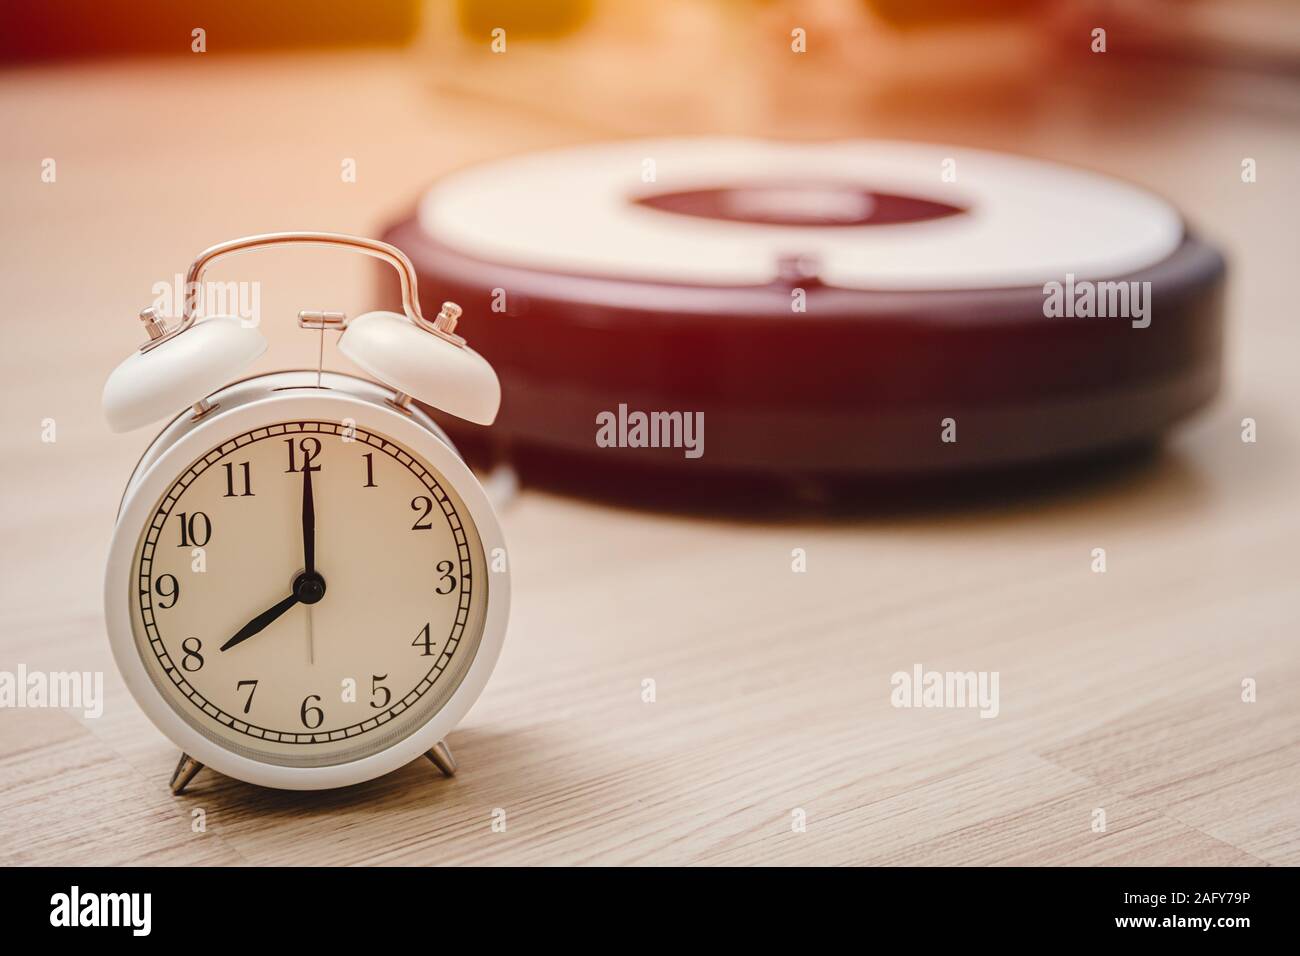 Reloj alarma veces para limpiar su hogar con aspiradora robot automático concepto. Foto de stock